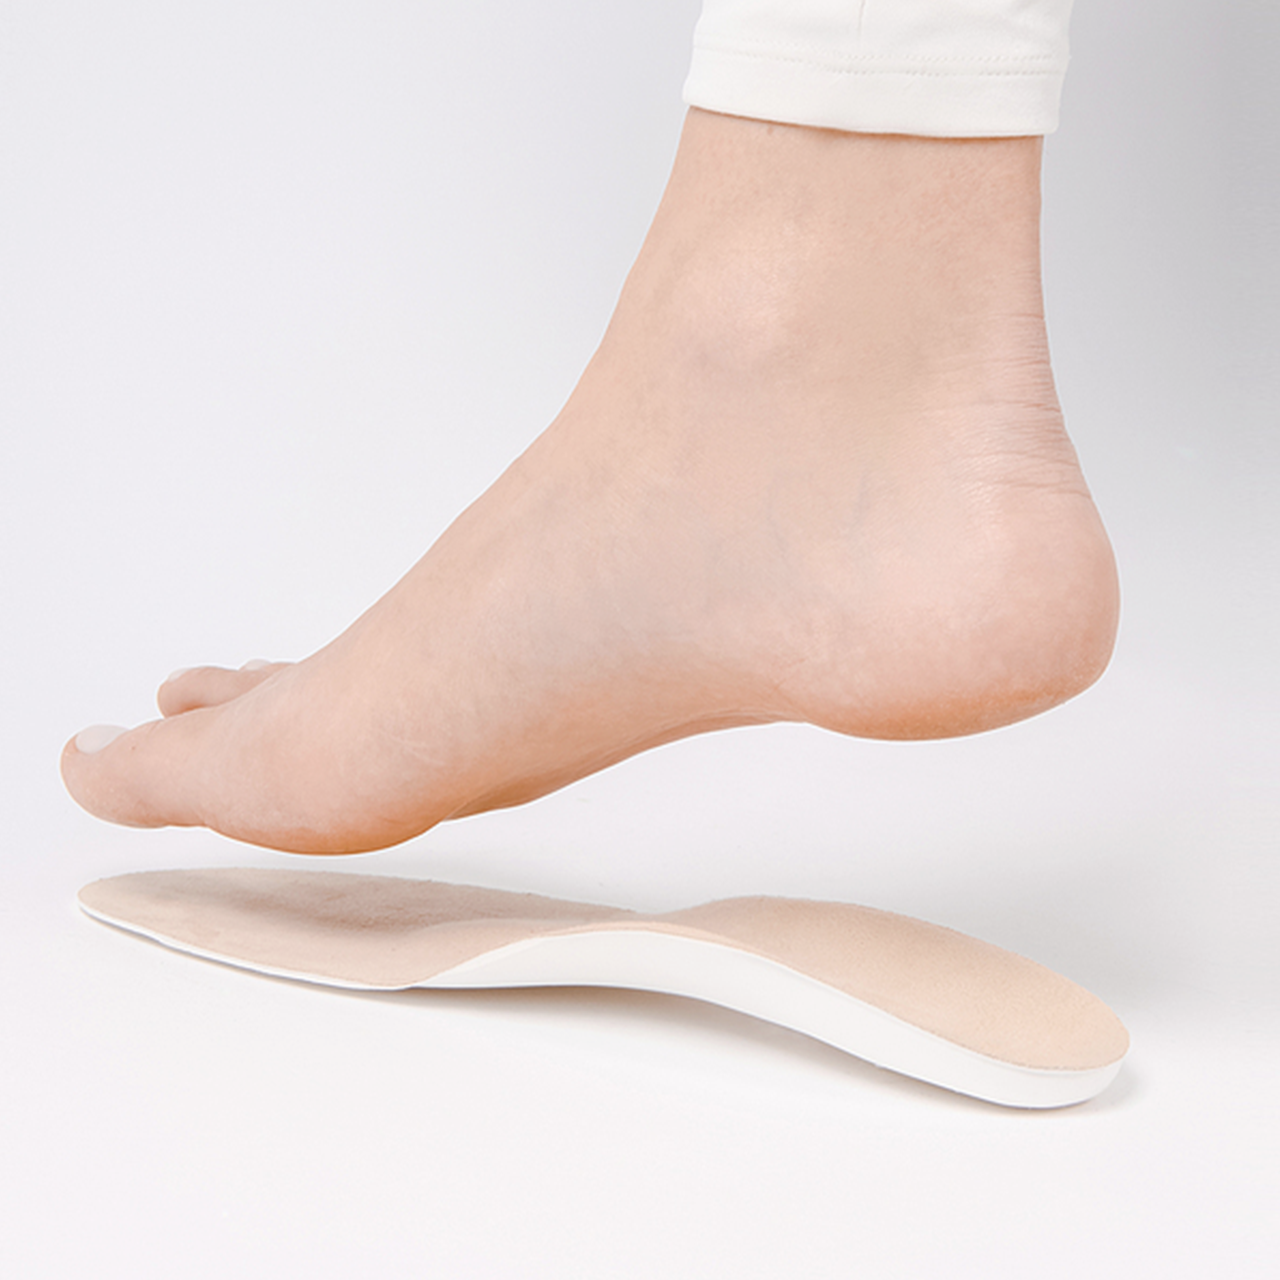 Custom foot orthotics